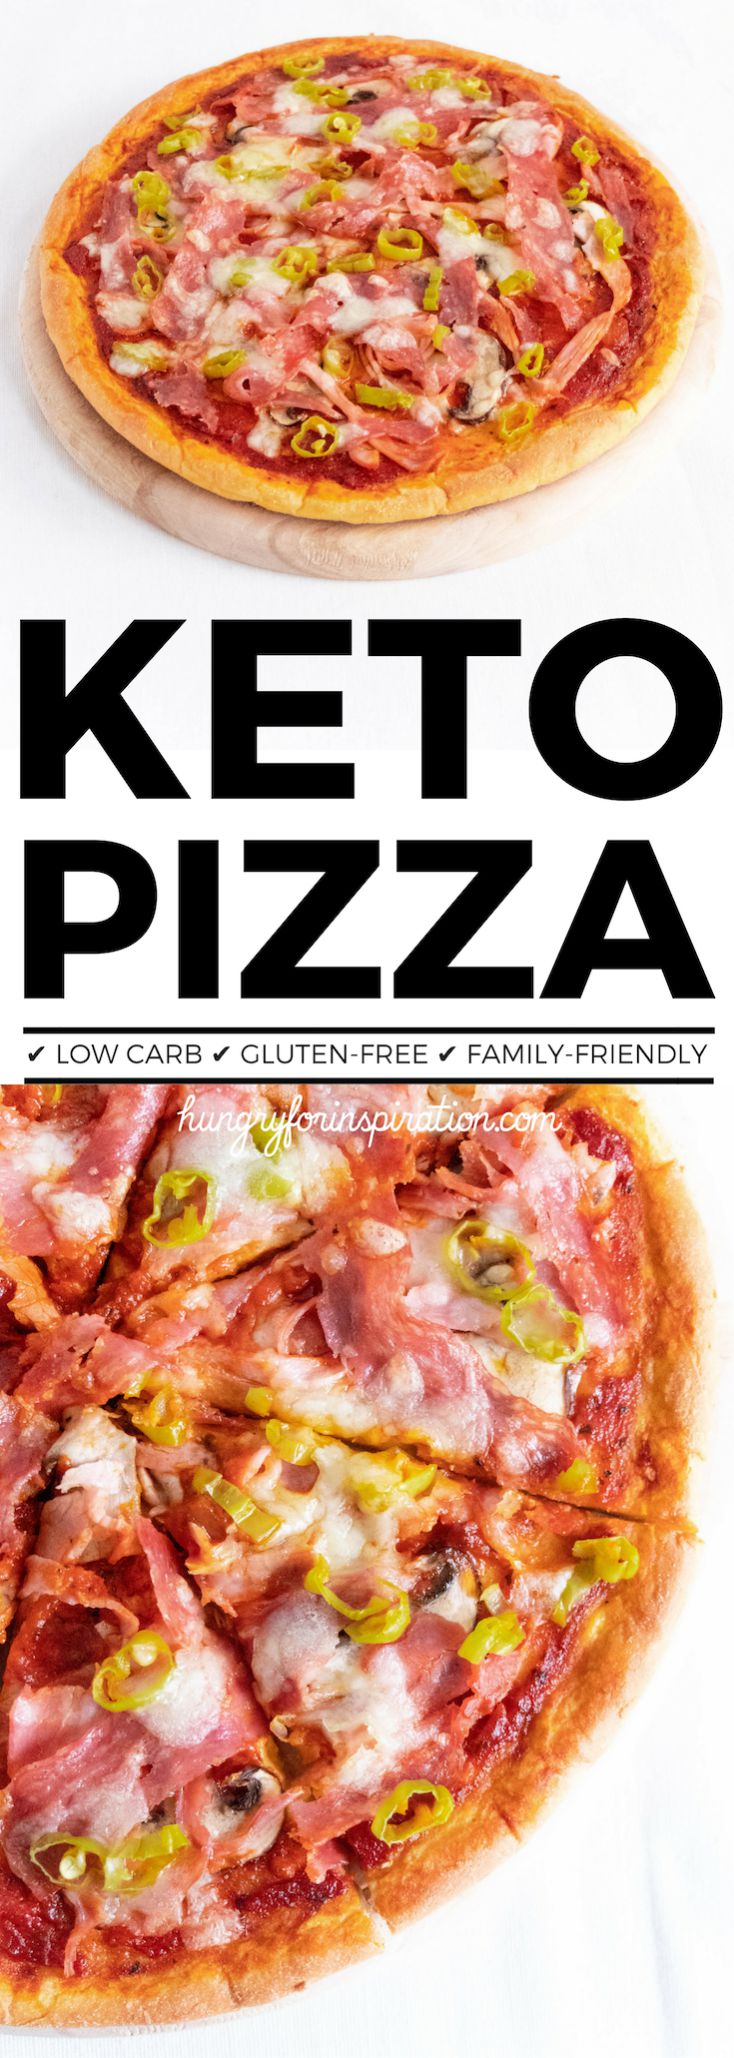 Fathead Keto Pizza Recipe With Ham, Pepperoni and Pepperoncini (Keto Dinner Recipe, Low Carb Pizza, Fathead Pizza)